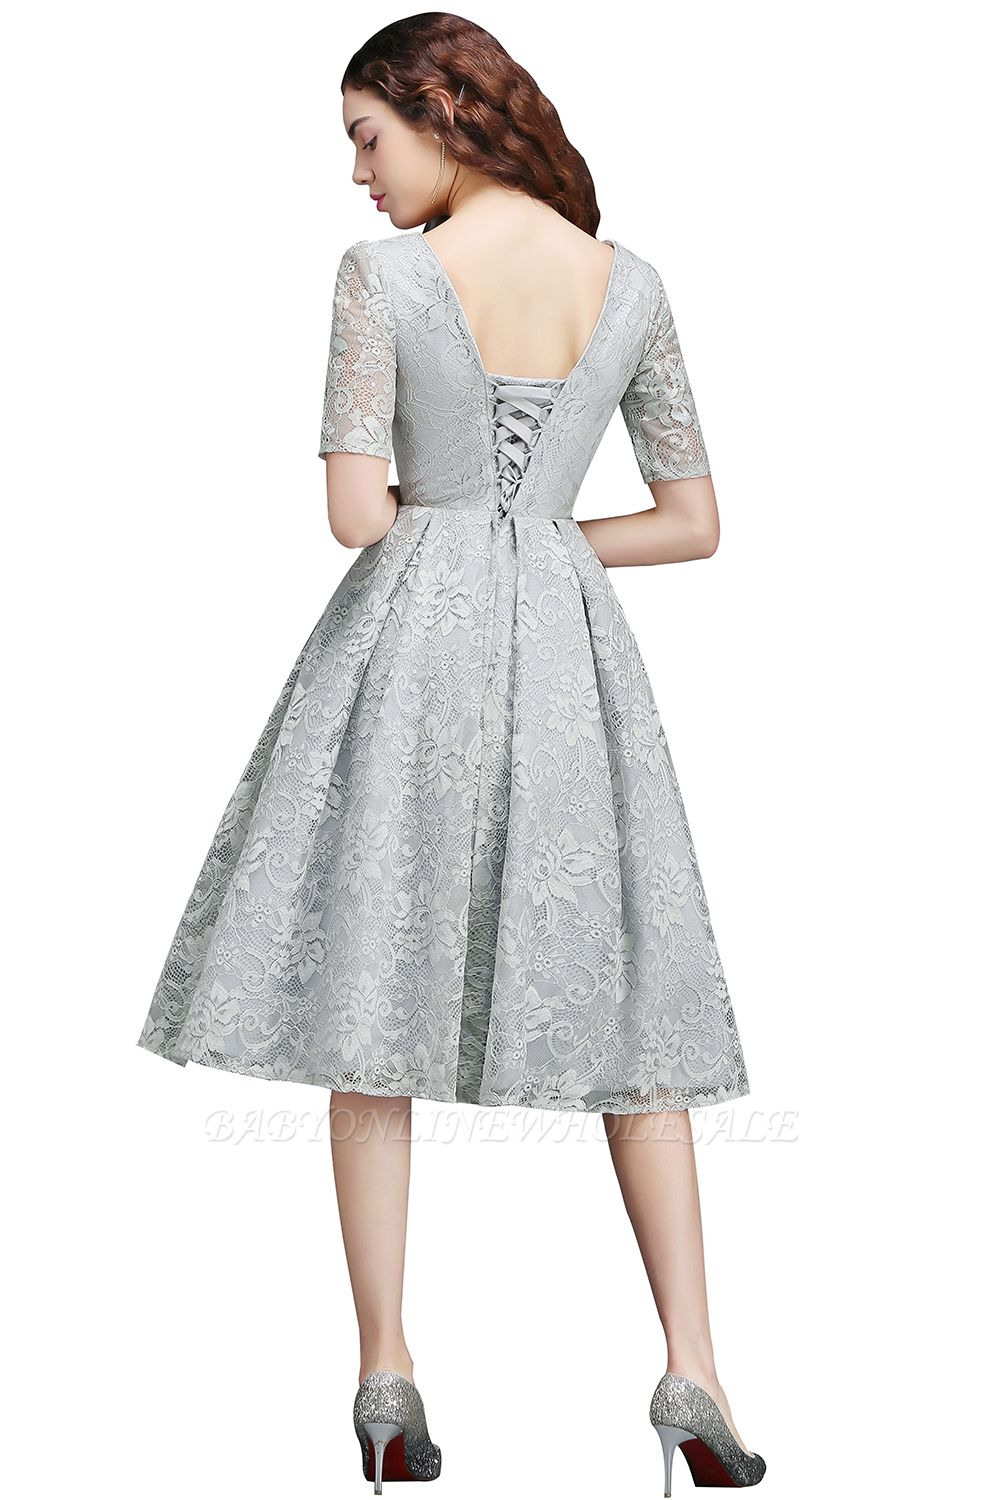 10 Luxurius Kleid Elegant Kurz für 201913 Einzigartig Kleid Elegant Kurz Vertrieb